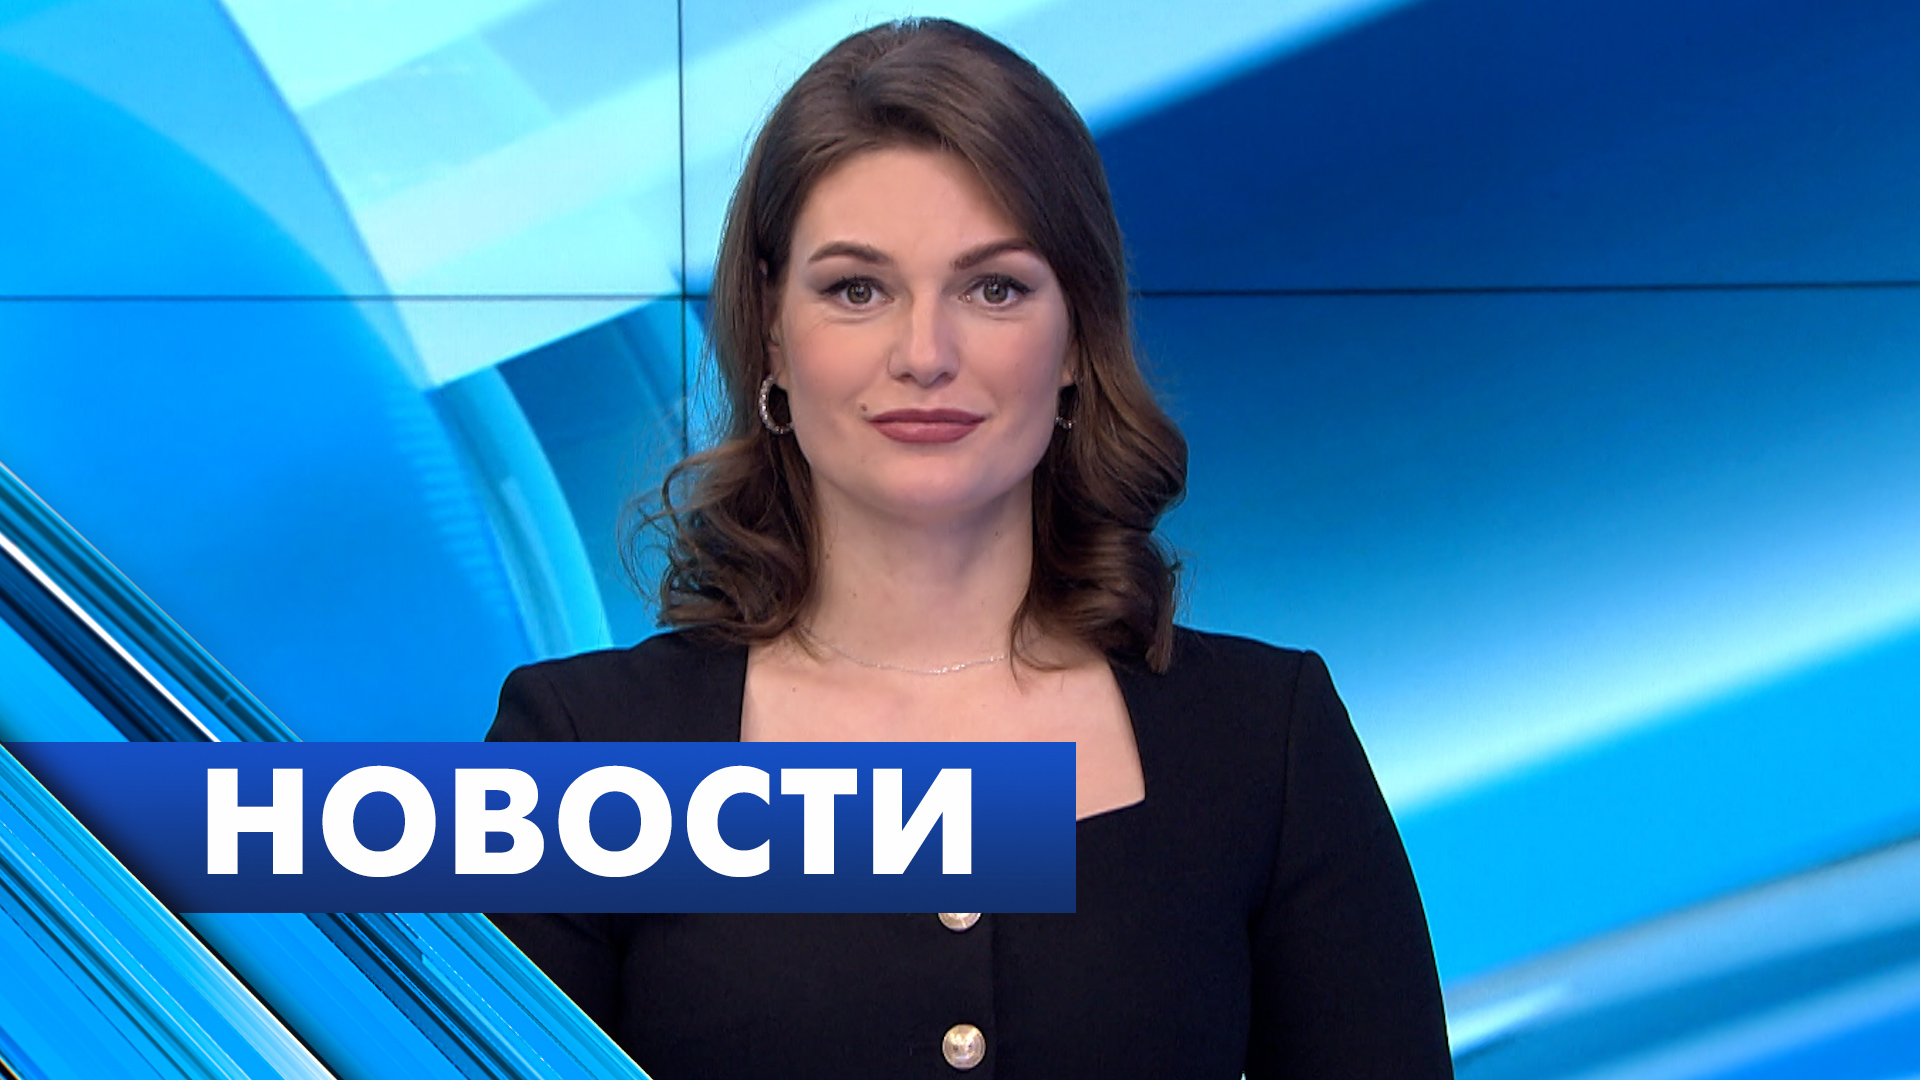 Главные новости Петербурга / 31 декабря